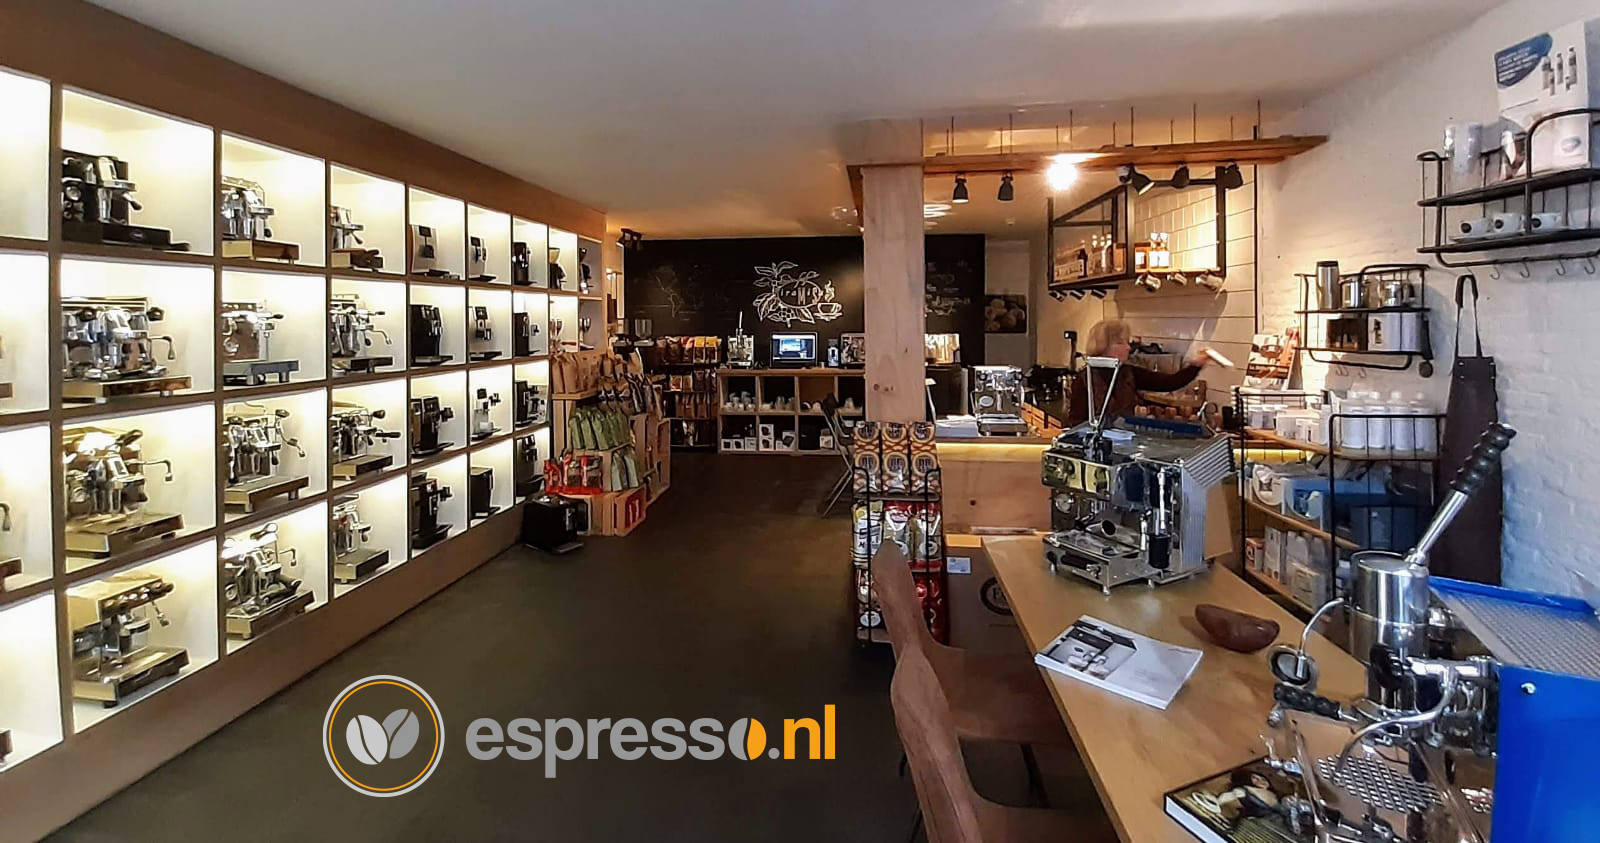 (c) Espresso.nl